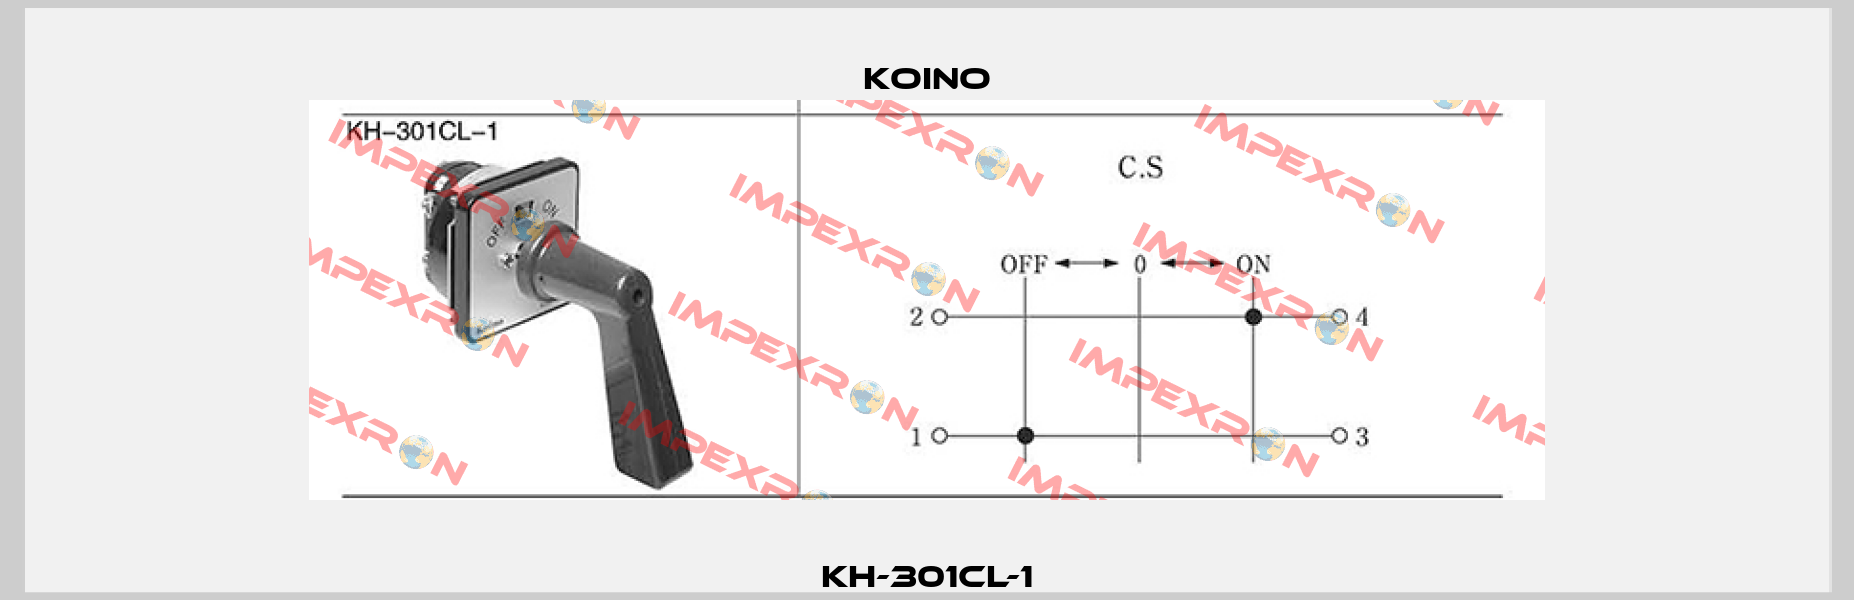 KH-301CL-1 Koino